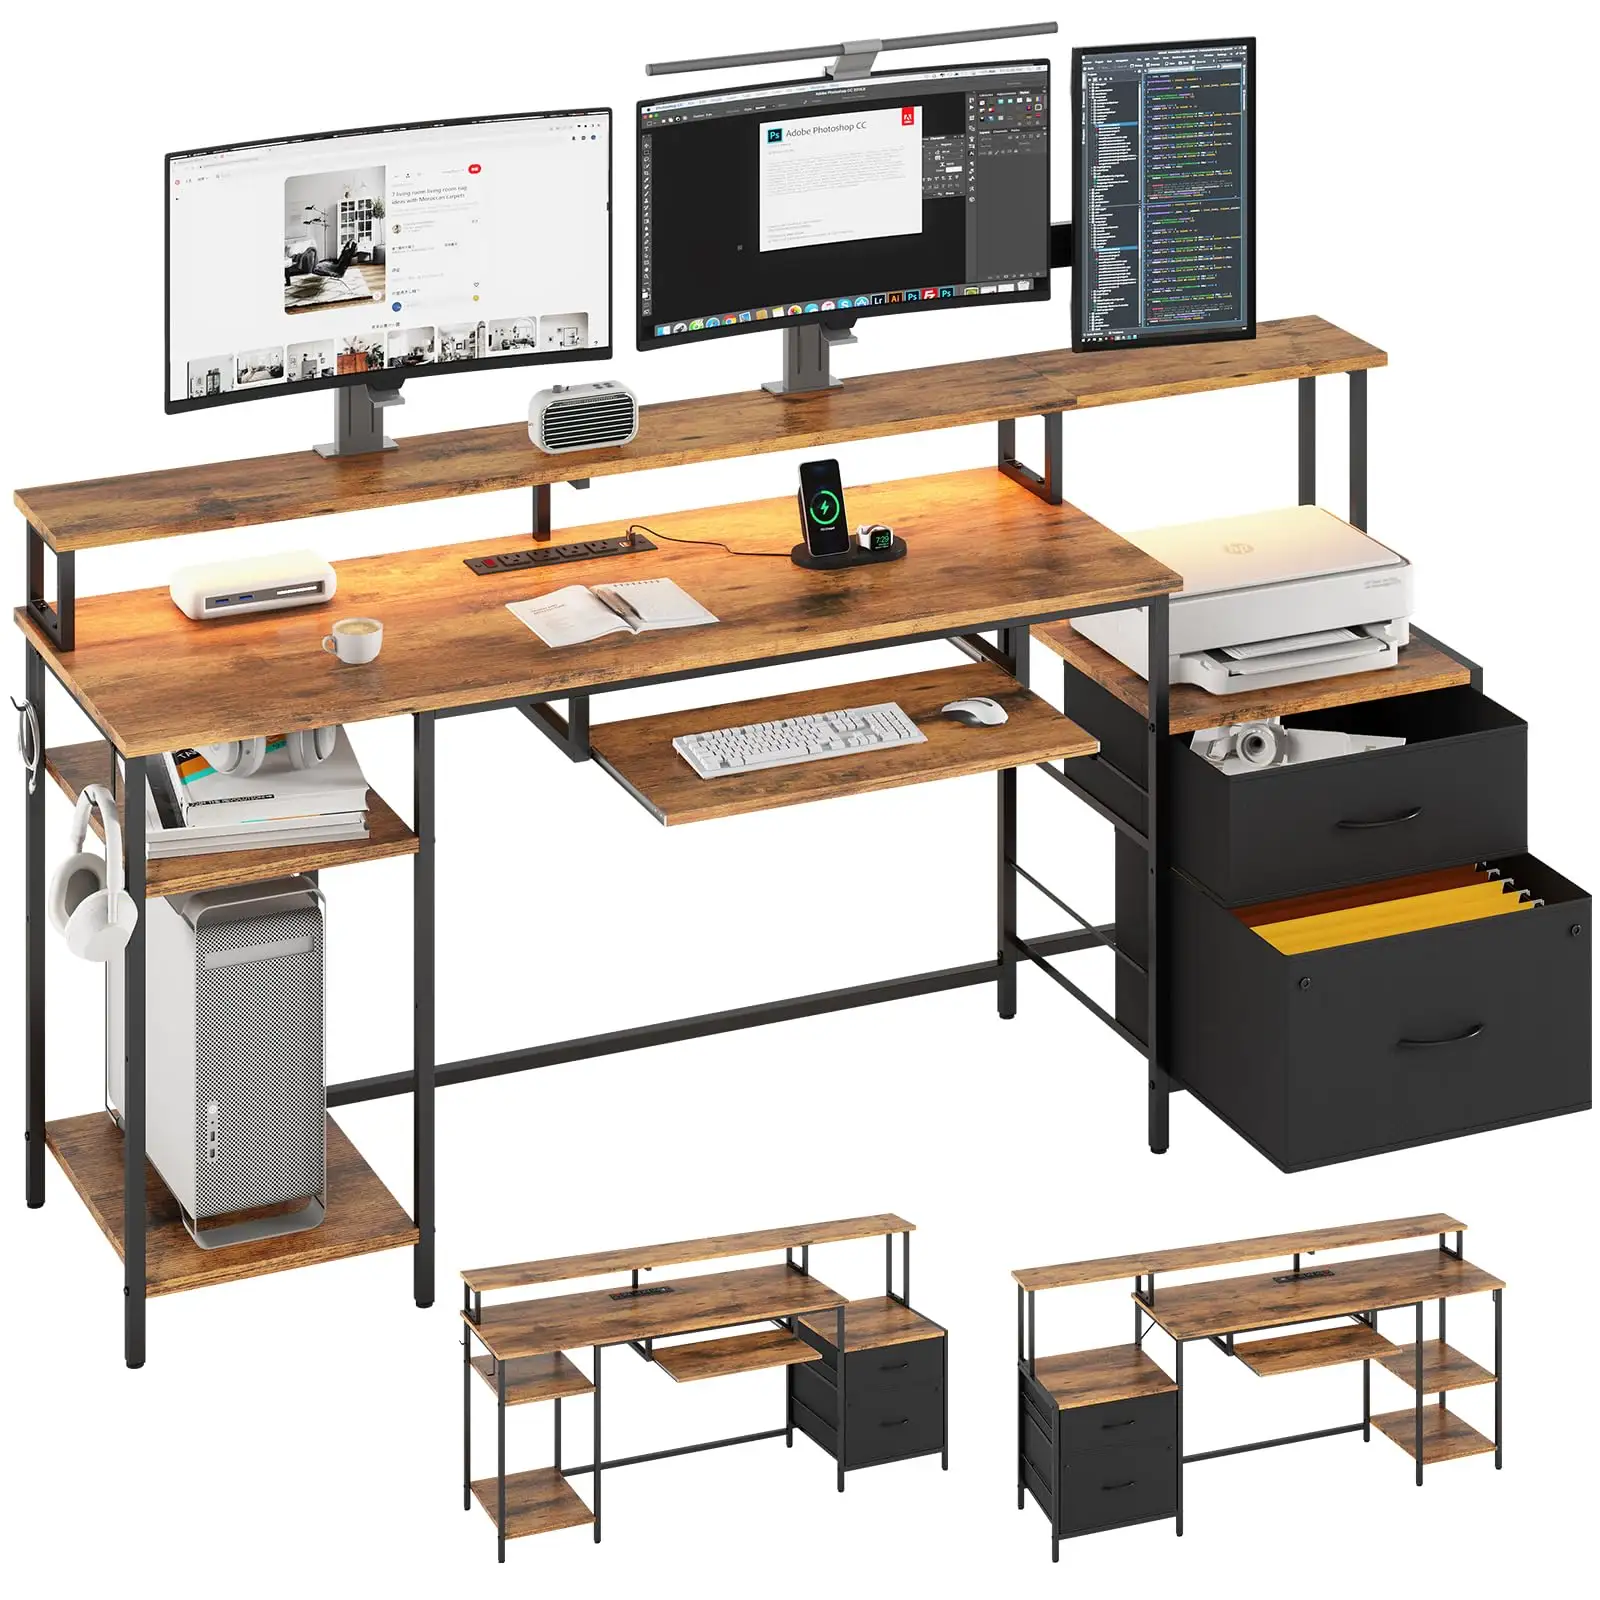 طاولة كمبيوتر حديثة مع خزانة قماشية طاولة ألعاب مع مخرج طاقة طاولة لوحة مفاتيح وحامل شاشة للمنزل